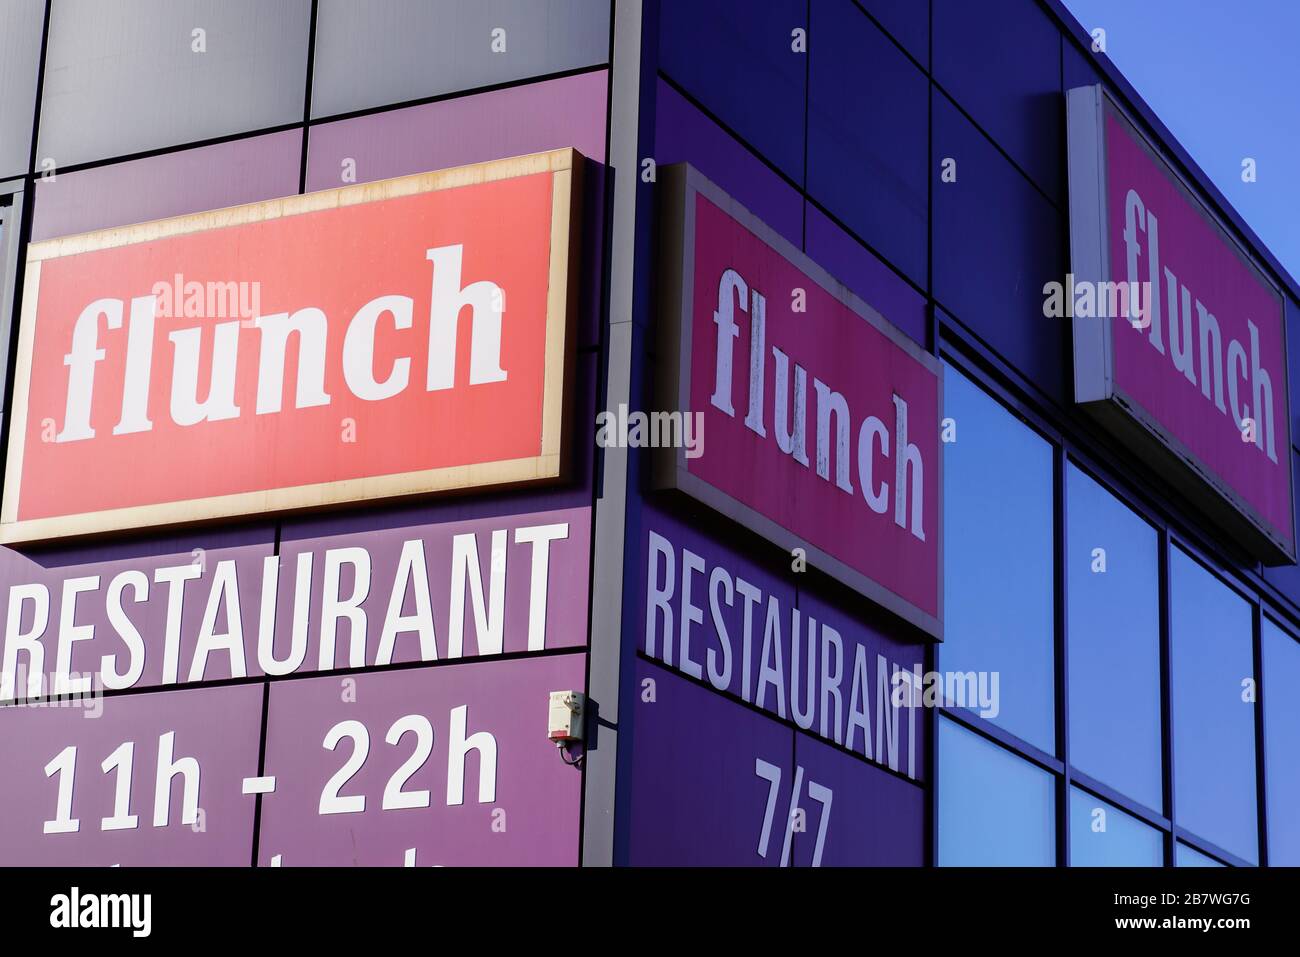 Bordeaux , Aquitaine / France - 03 07 2020 : chaîne de restaurant logo en libre-service Flunch ouvert 7 jours sur 7 avec buffet illimité Banque D'Images